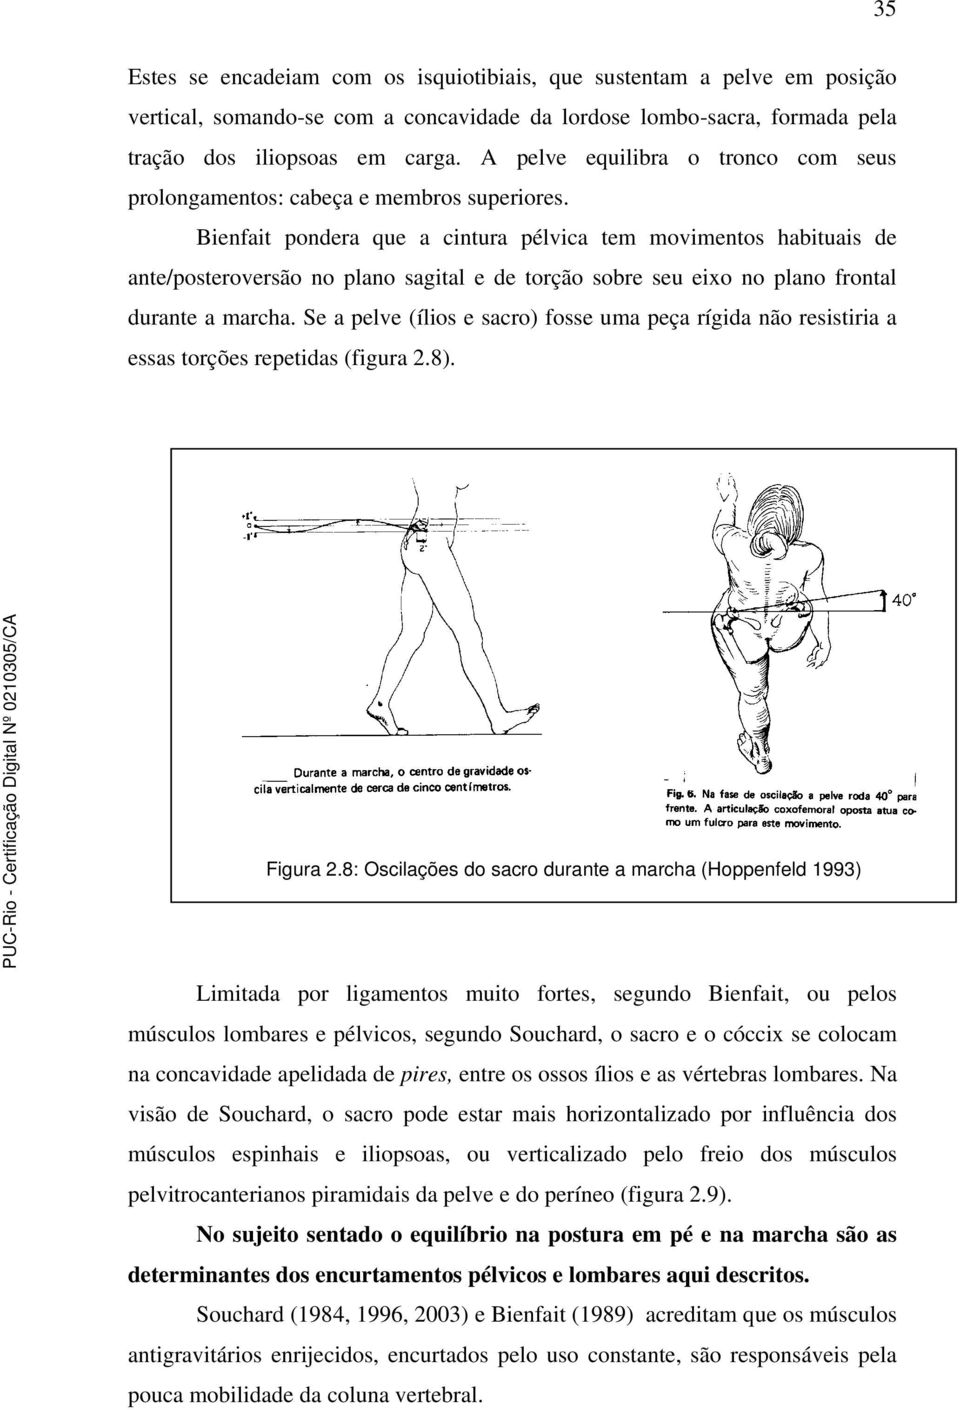 Bienfait pondera que a cintura pélvica tem movimentos habituais de ante/posteroversão no plano sagital e de torção sobre seu eixo no plano frontal durante a marcha.